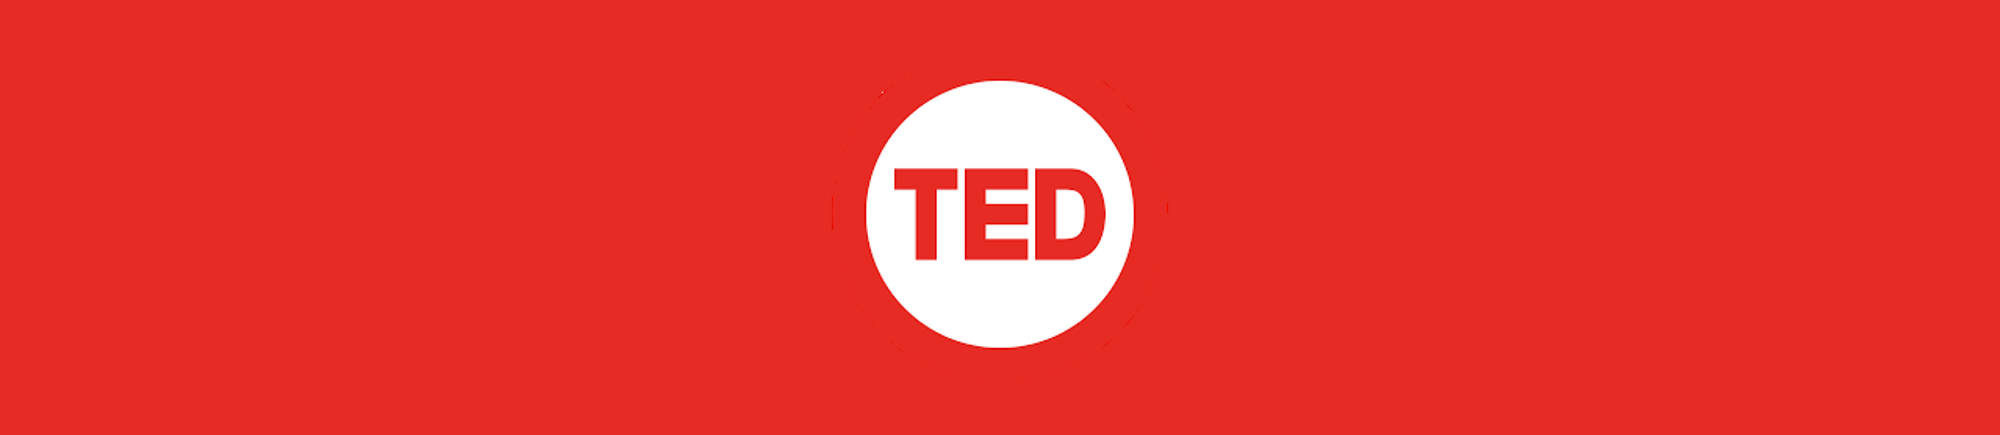 5 TED Talk sobre Sustentabilidade que você precisa conhecer